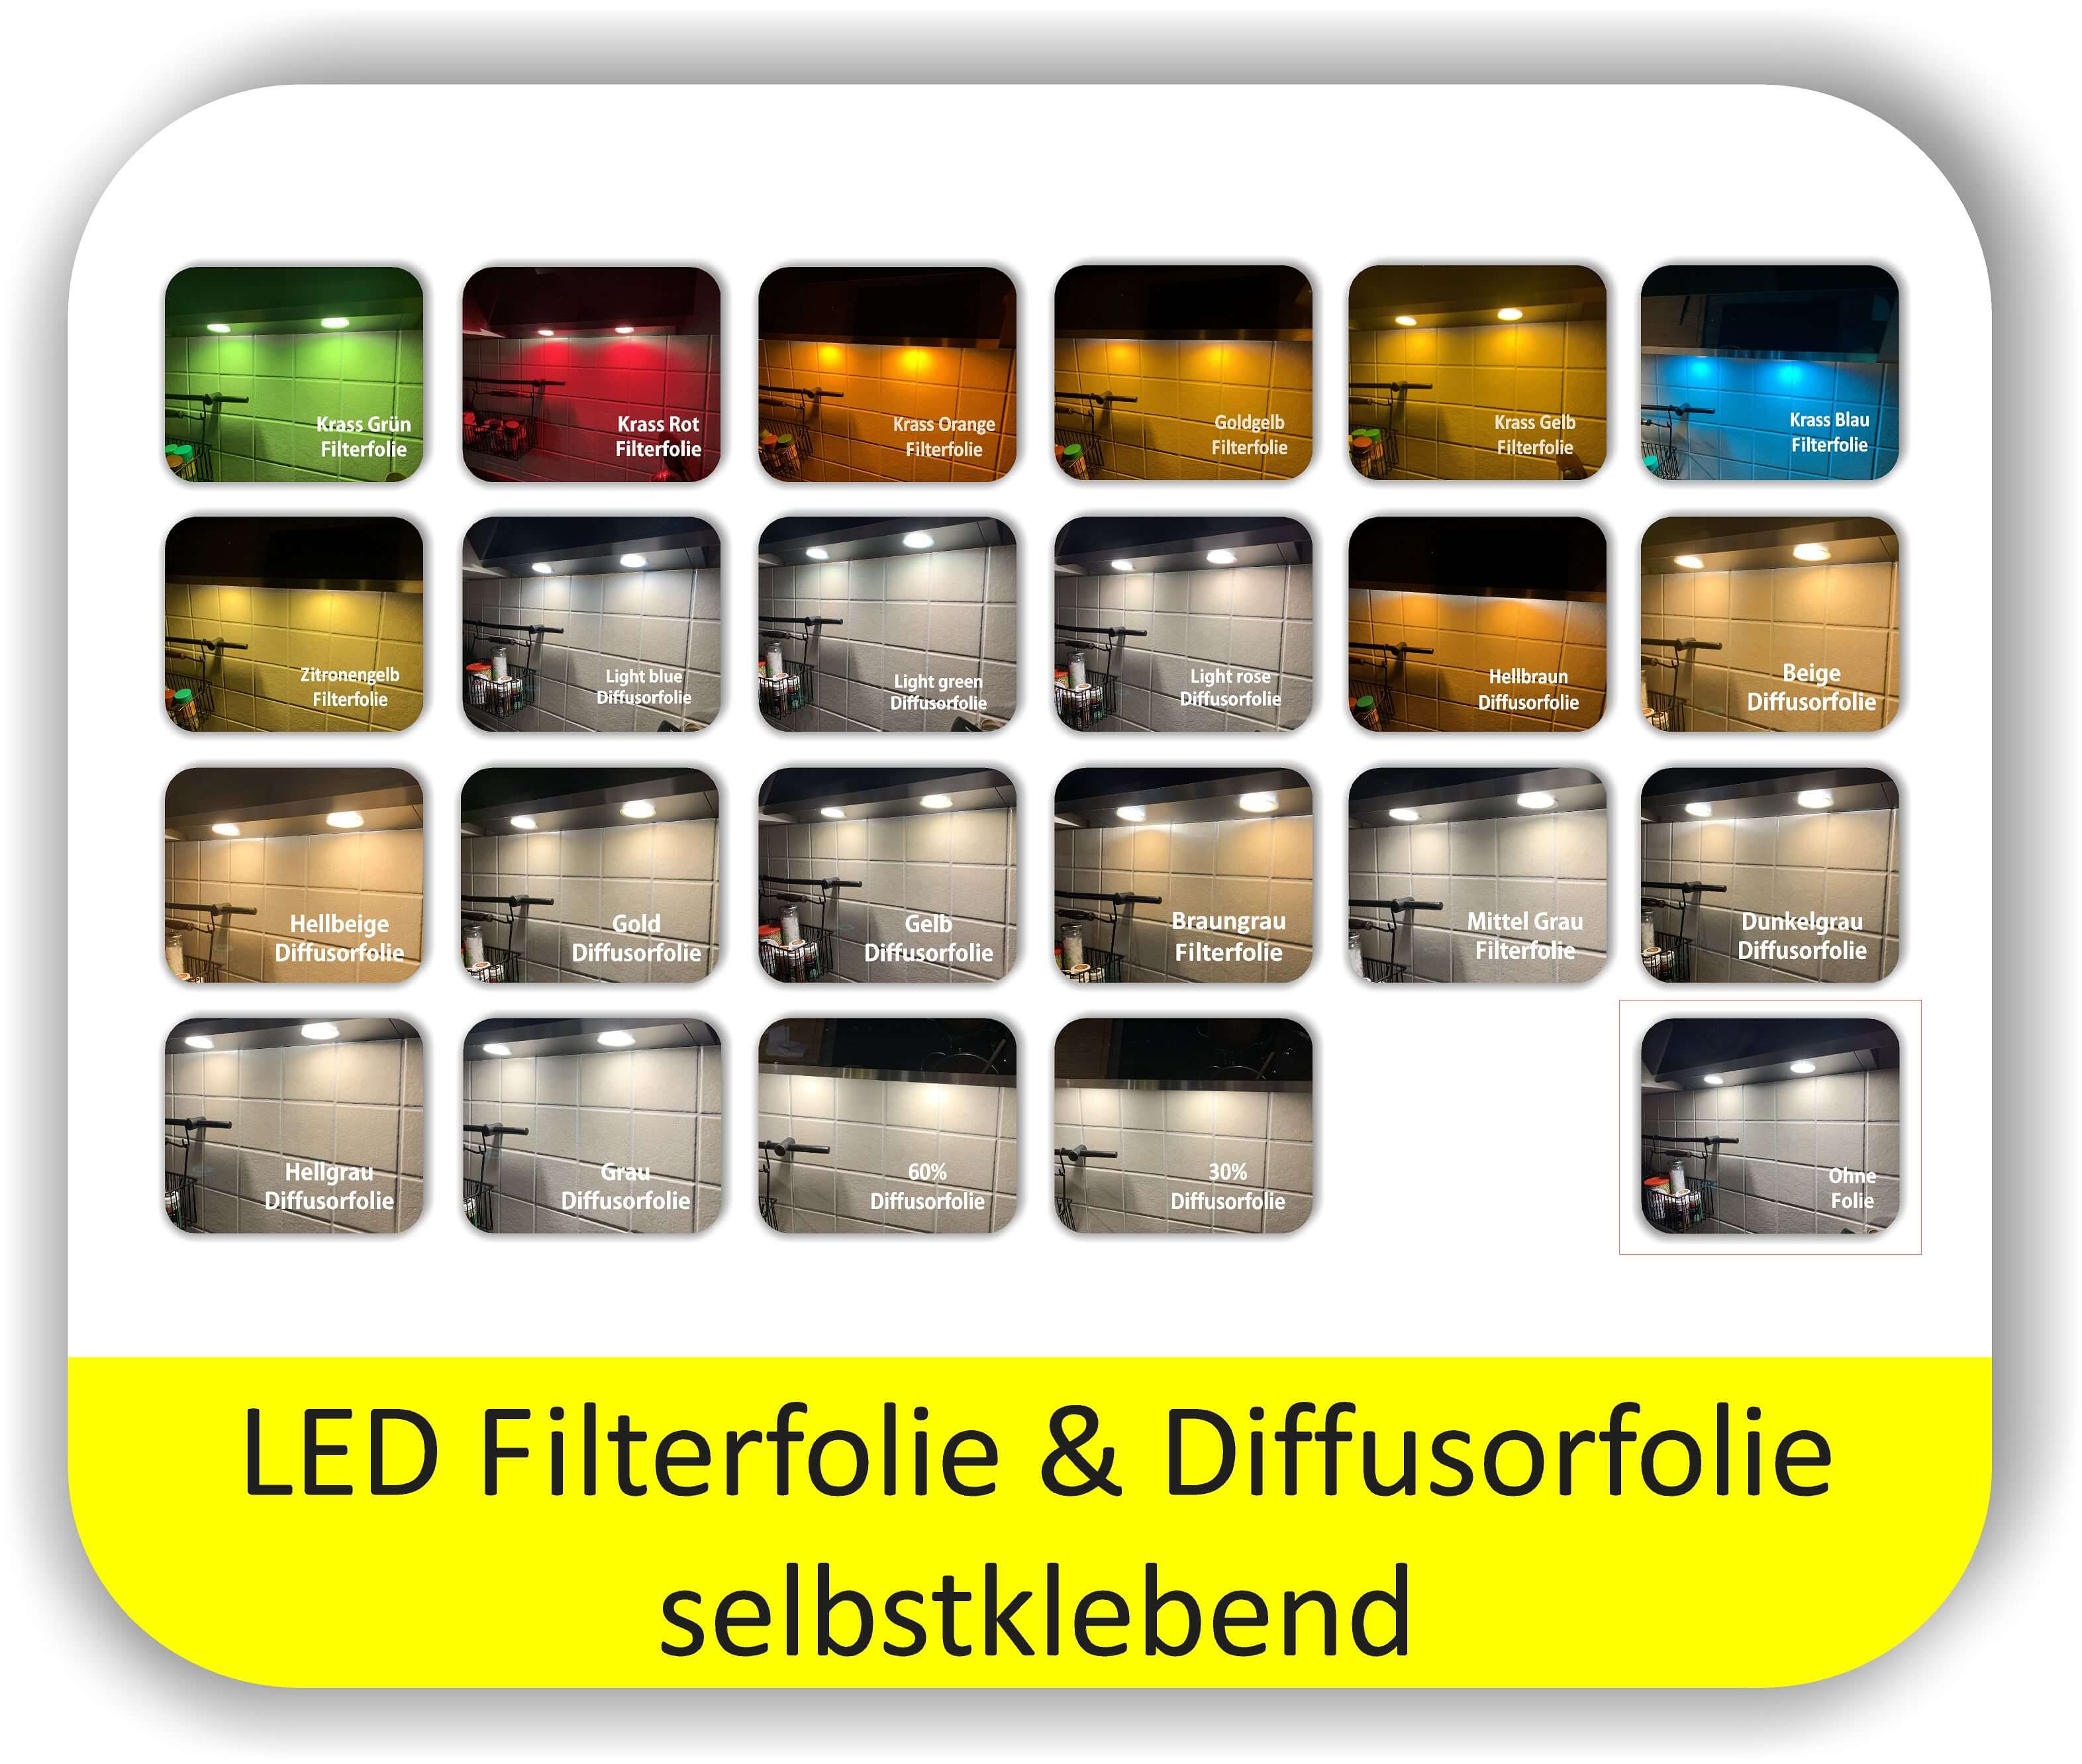 Diffusorfolie Krass Lila, Filterfolie LED, Warmlichtfolie für LED, LED  Folie (334314361868) - купить на .de (Германия) с доставкой в Украину